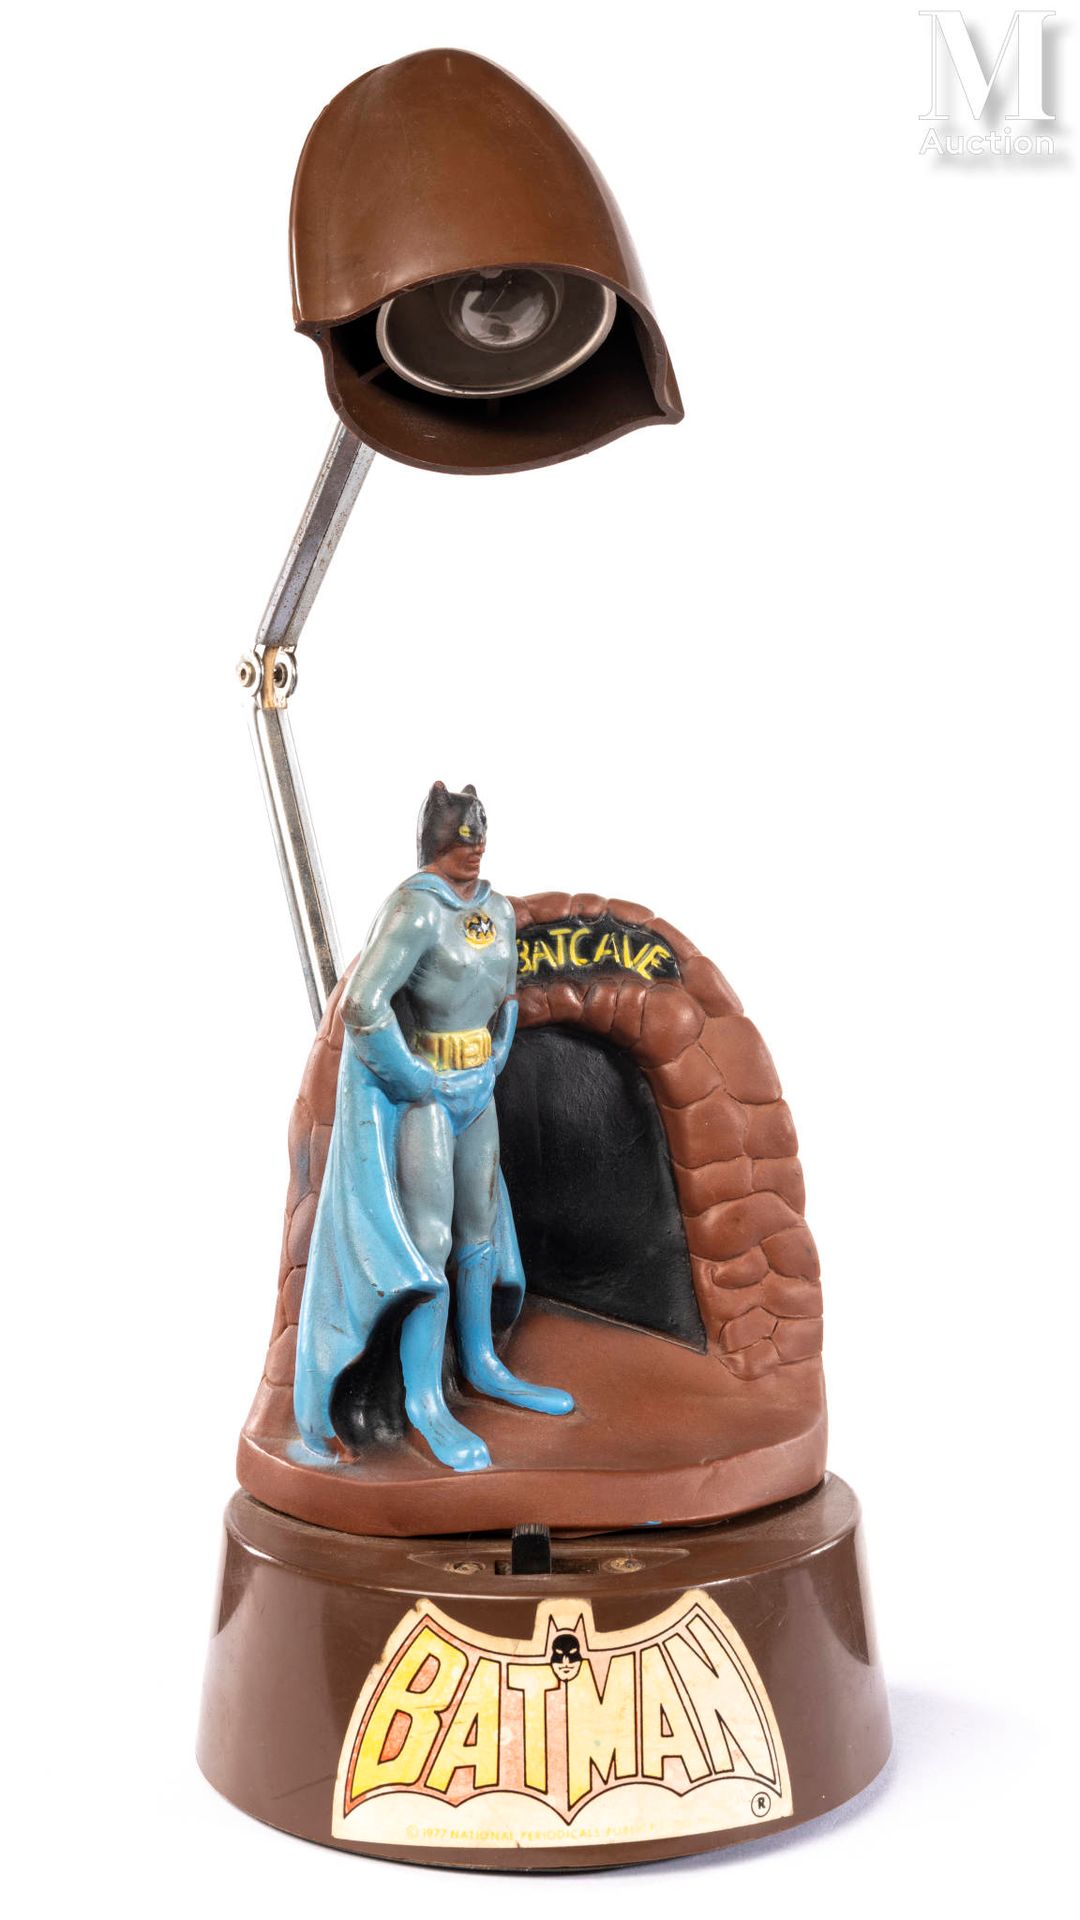 VANITY FAIR "Batcave"

Lampe de bureau en plastique et métal à bras orientable.